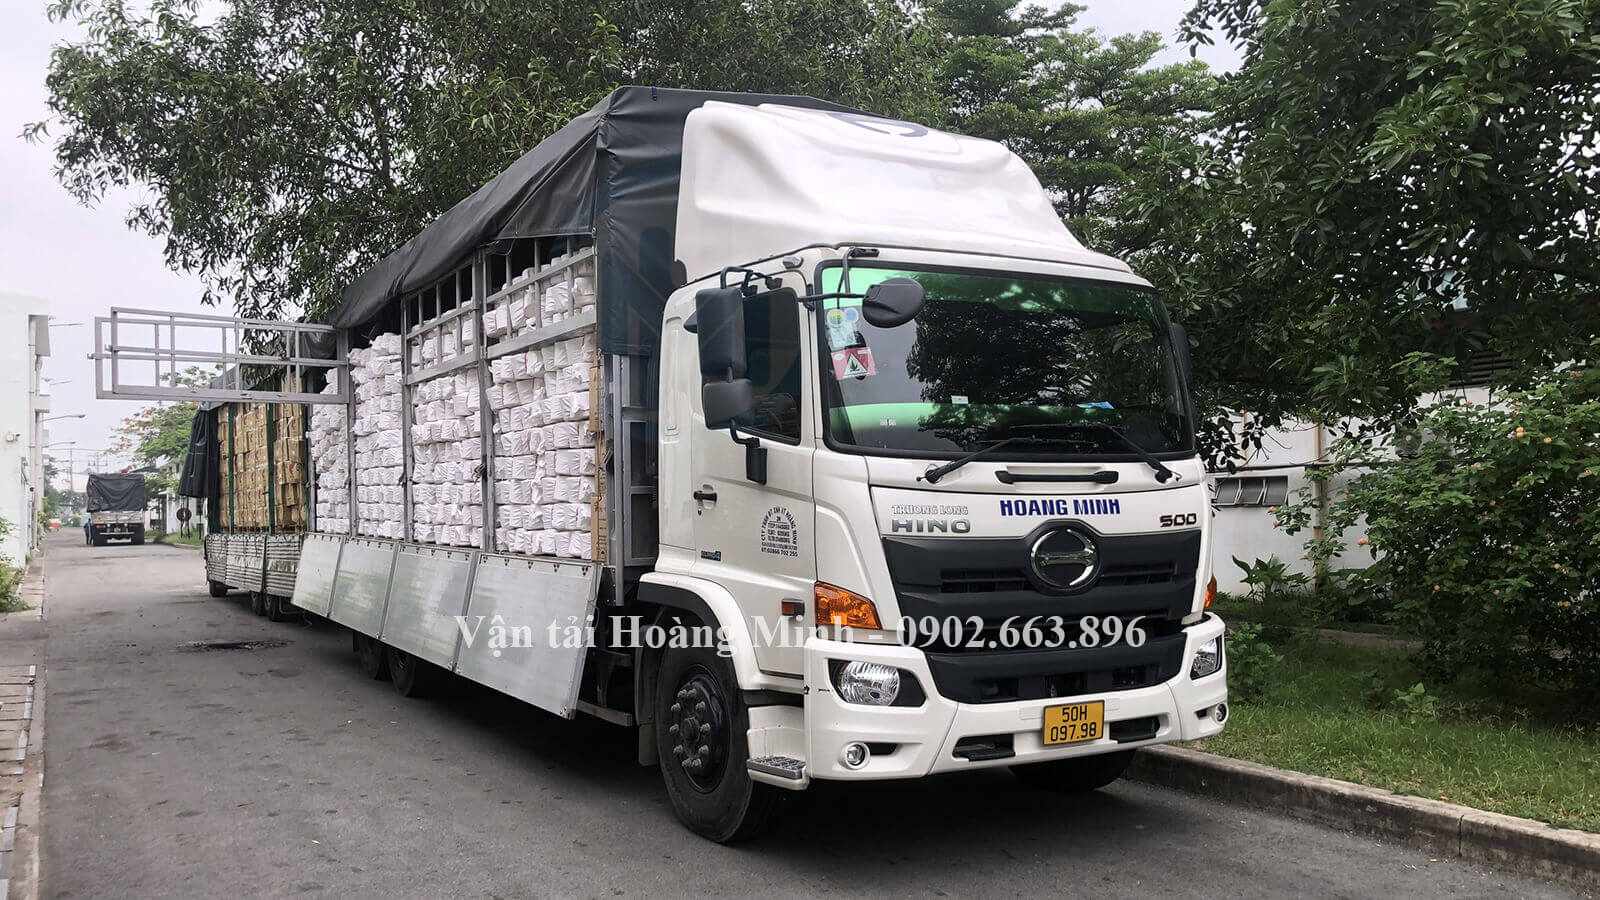 Xe tải Hoàng Minh nhận chở hàng cho khách tại các tỉnh Trà Vinh.jpg